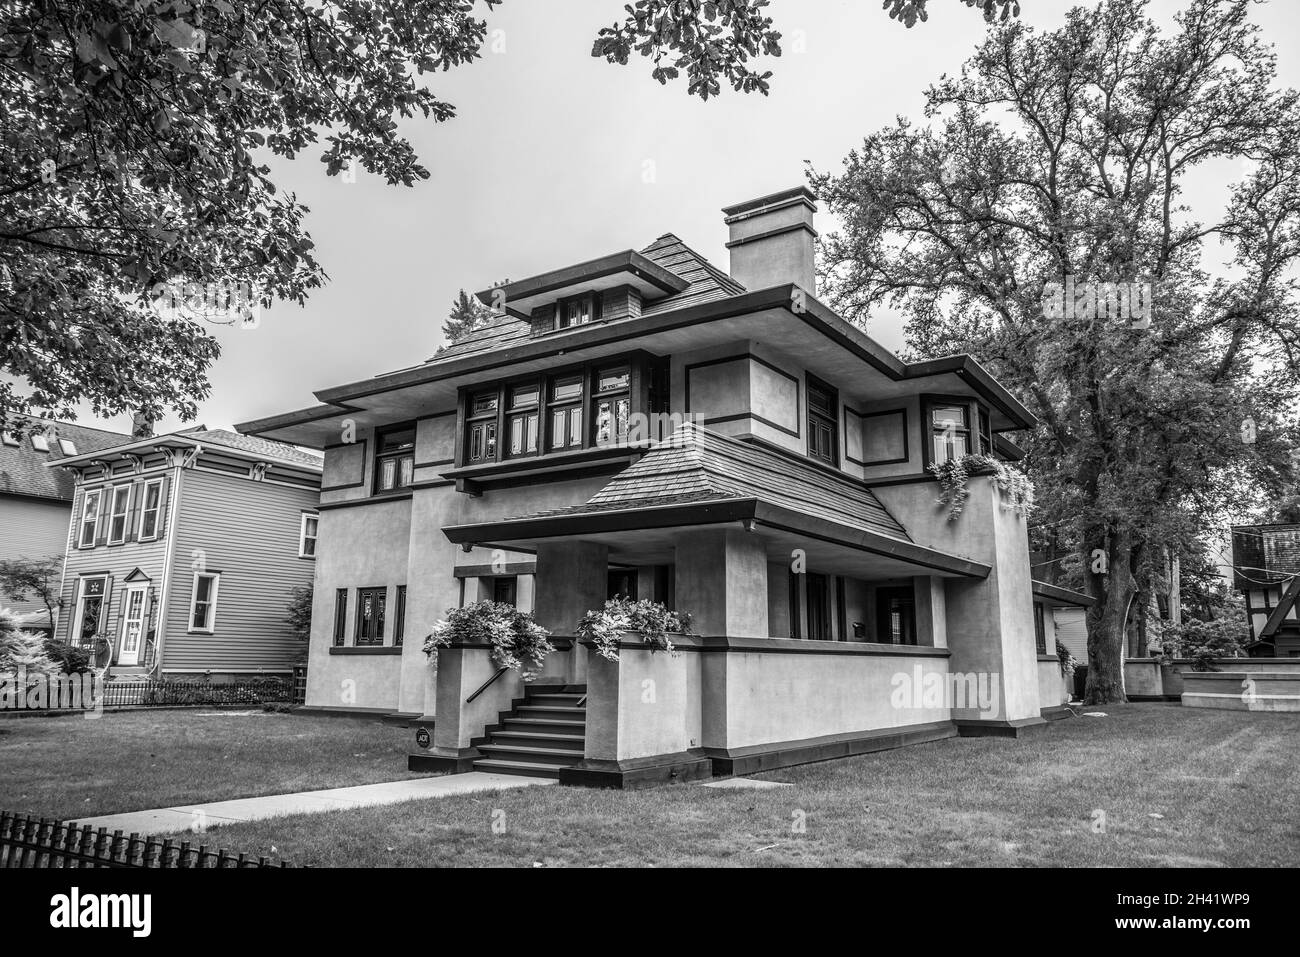 Frank W. Thomas maison du célèbre architecte Frank Lloyd Wright à Oak Park, États-Unis Banque D'Images